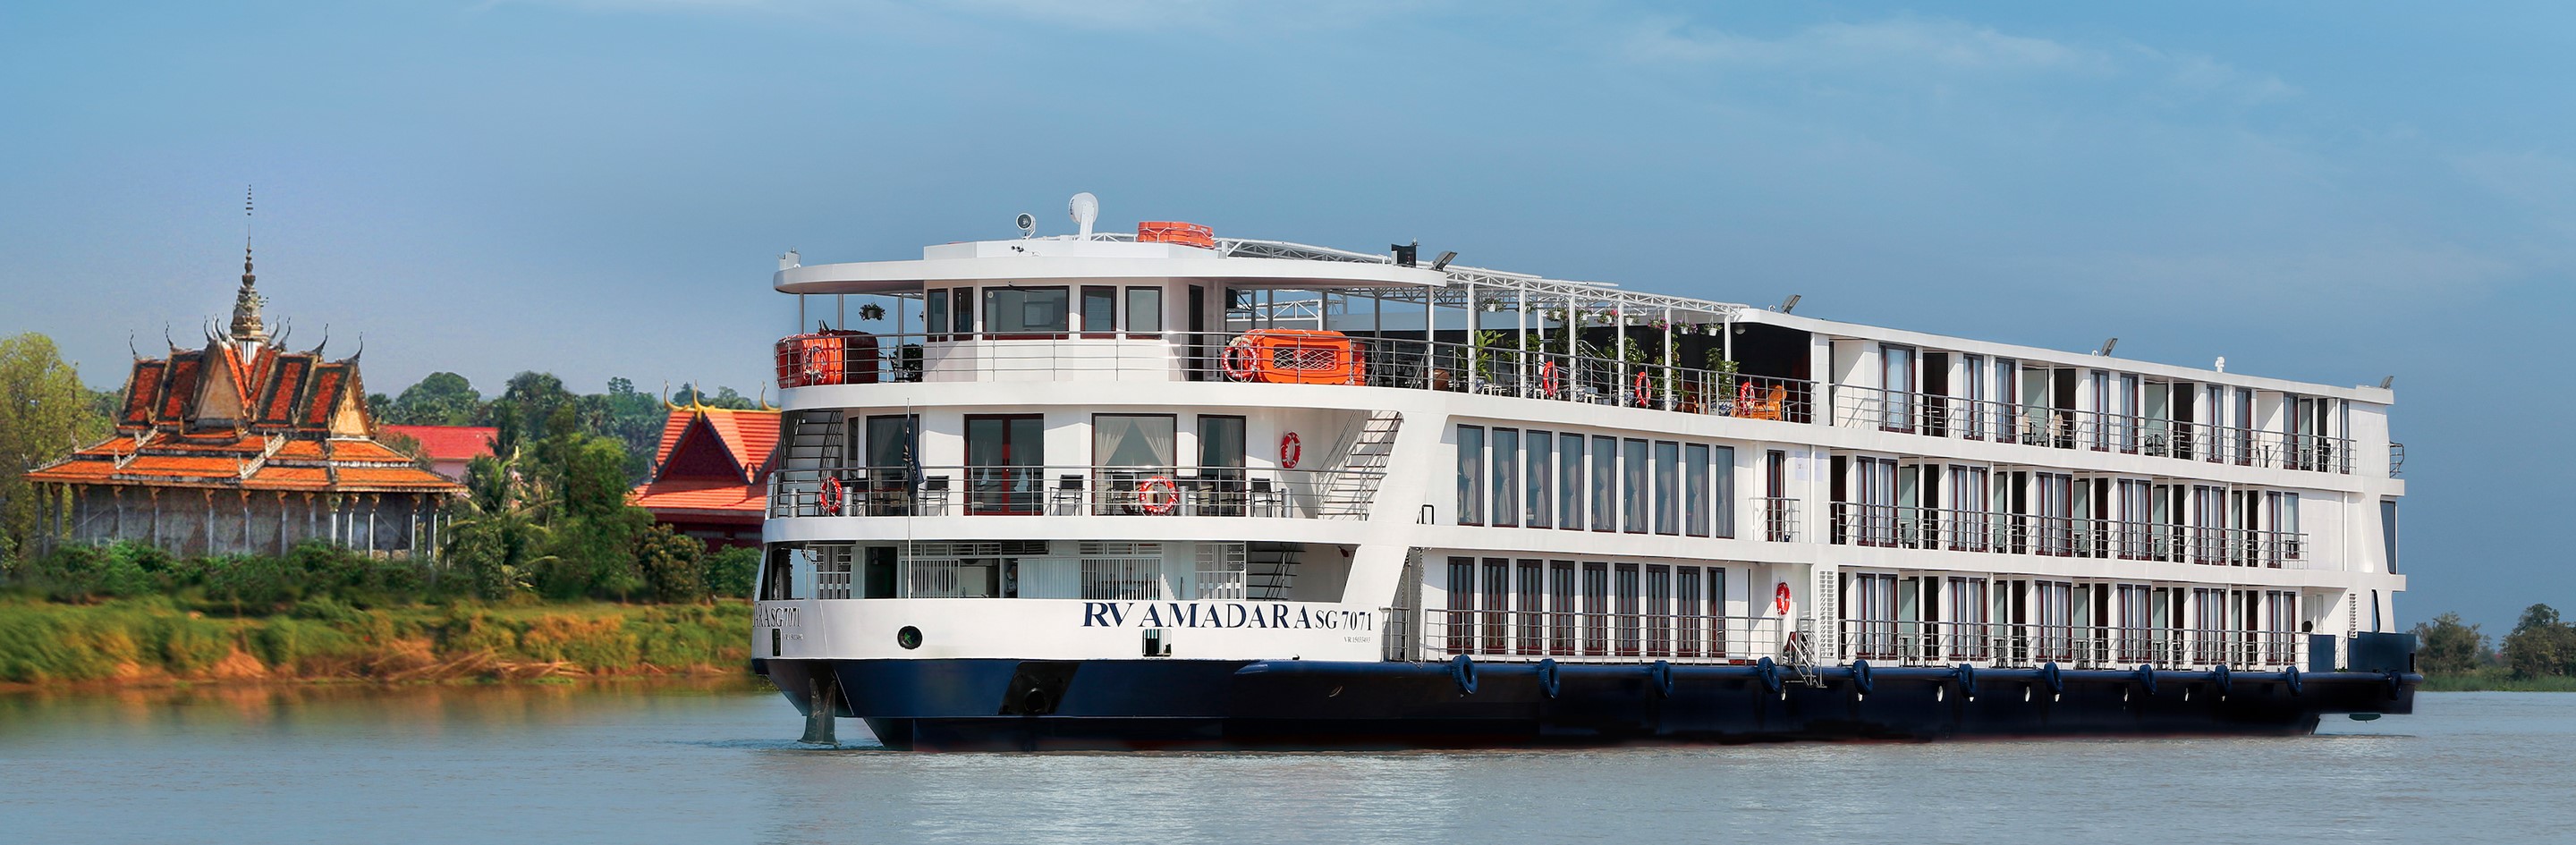 AmaViola River Cruise Ship